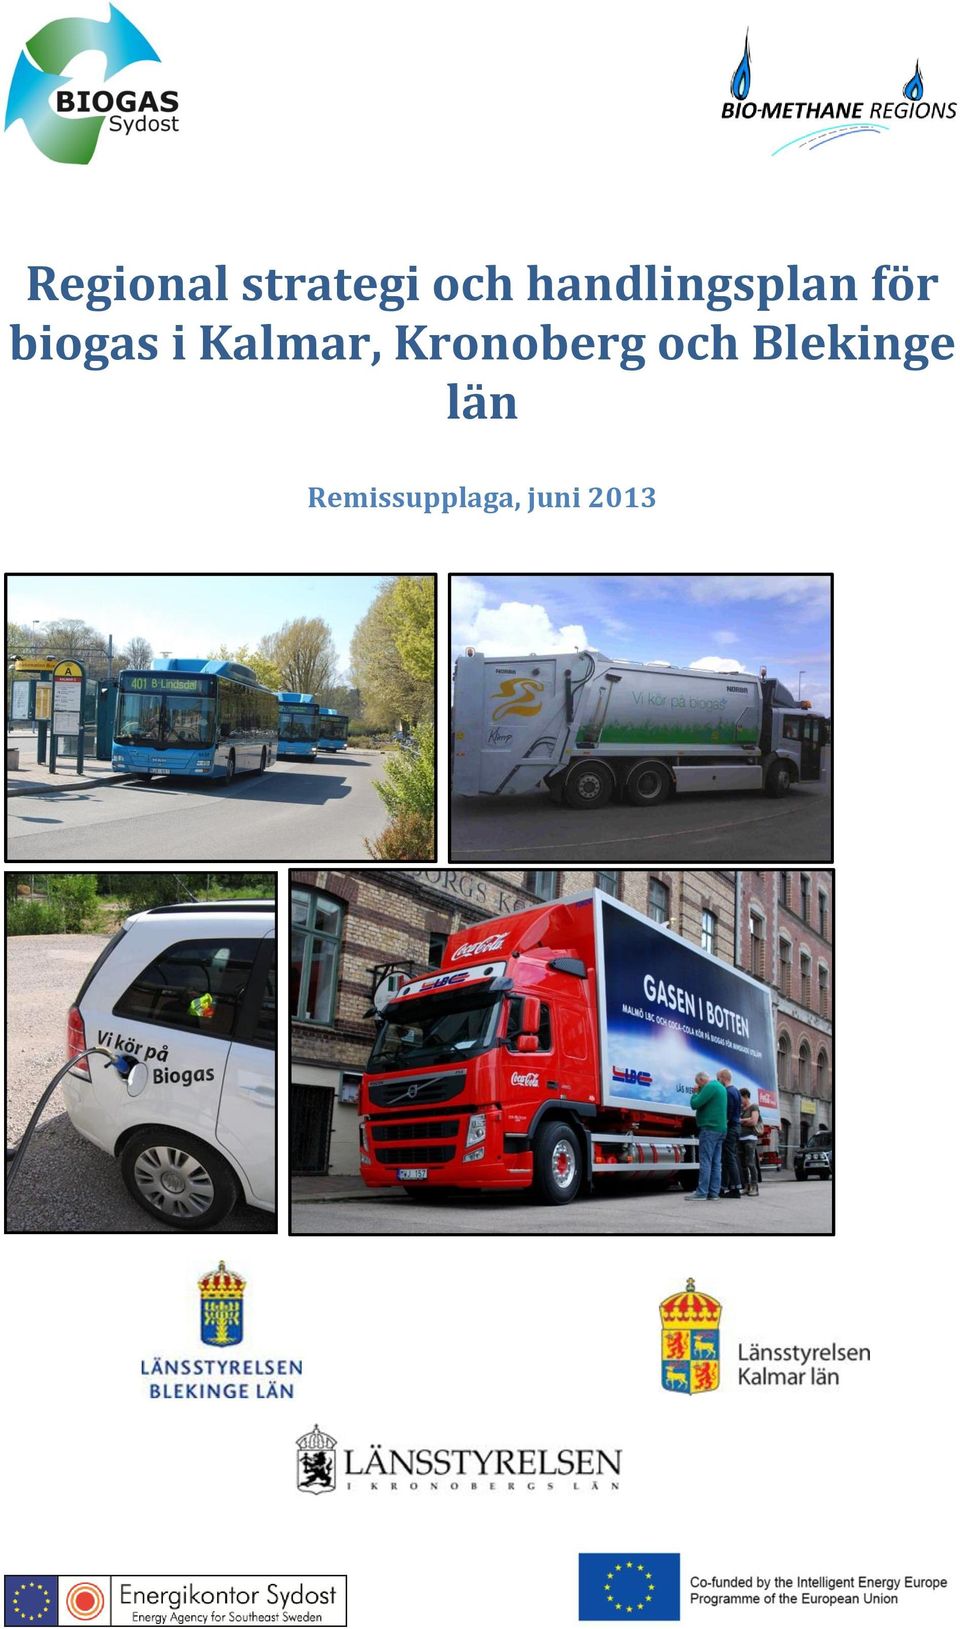 Kalmar, Kronoberg och